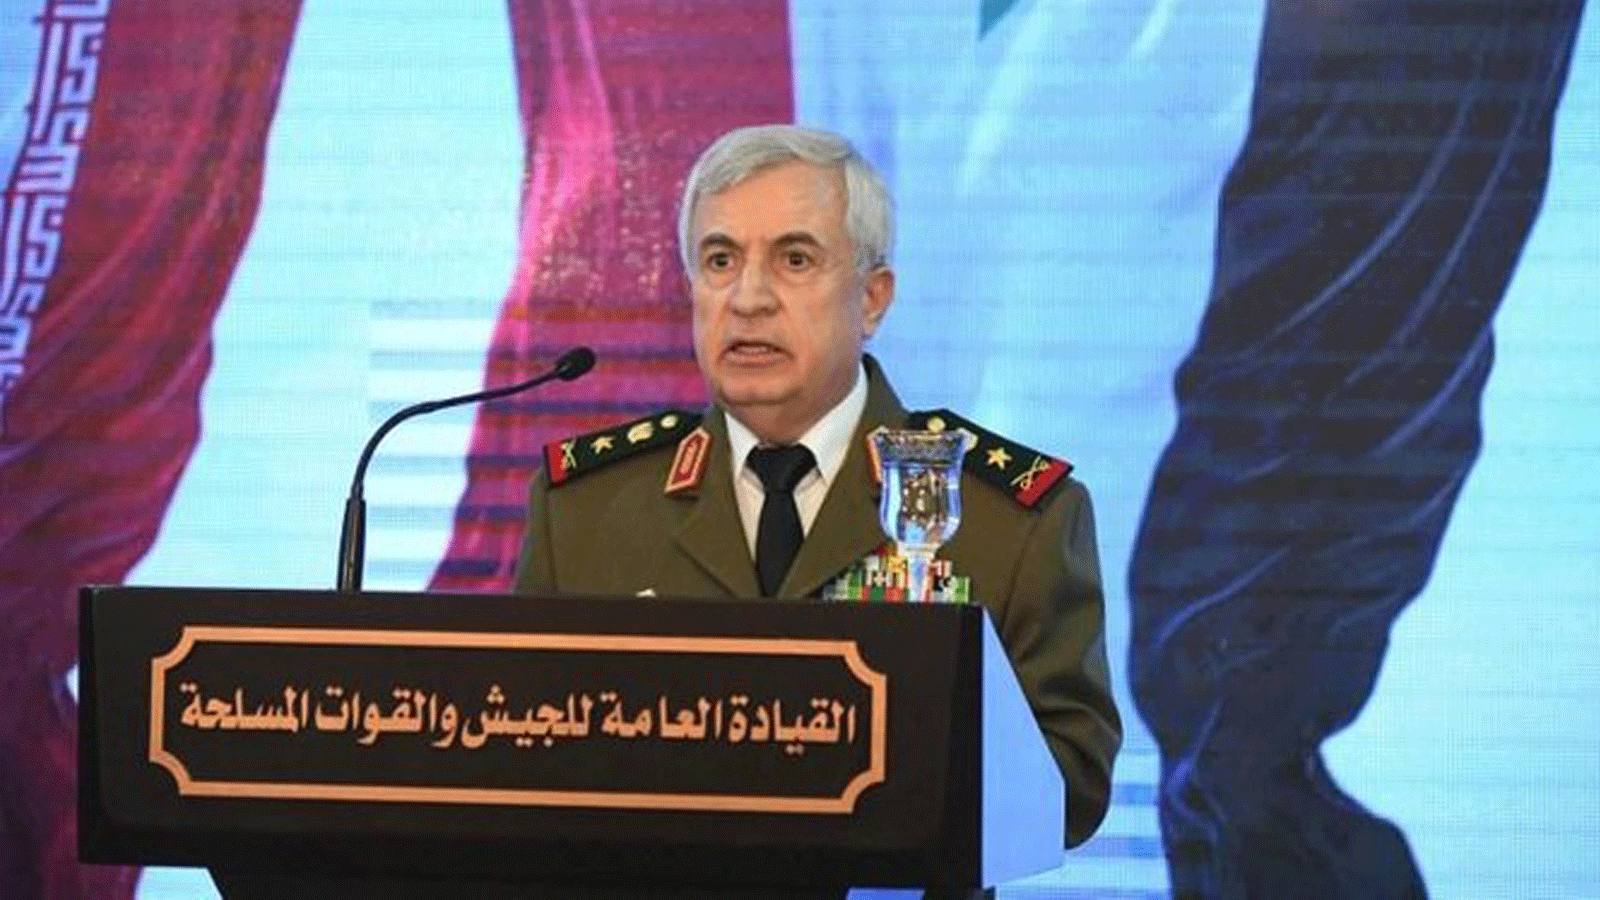 وزير الدفاع السوري علي أيوب في تصريح حول استعادة السيطرة على الاراضي الكردية في سوريا. 18 آذار/ مارس 2019